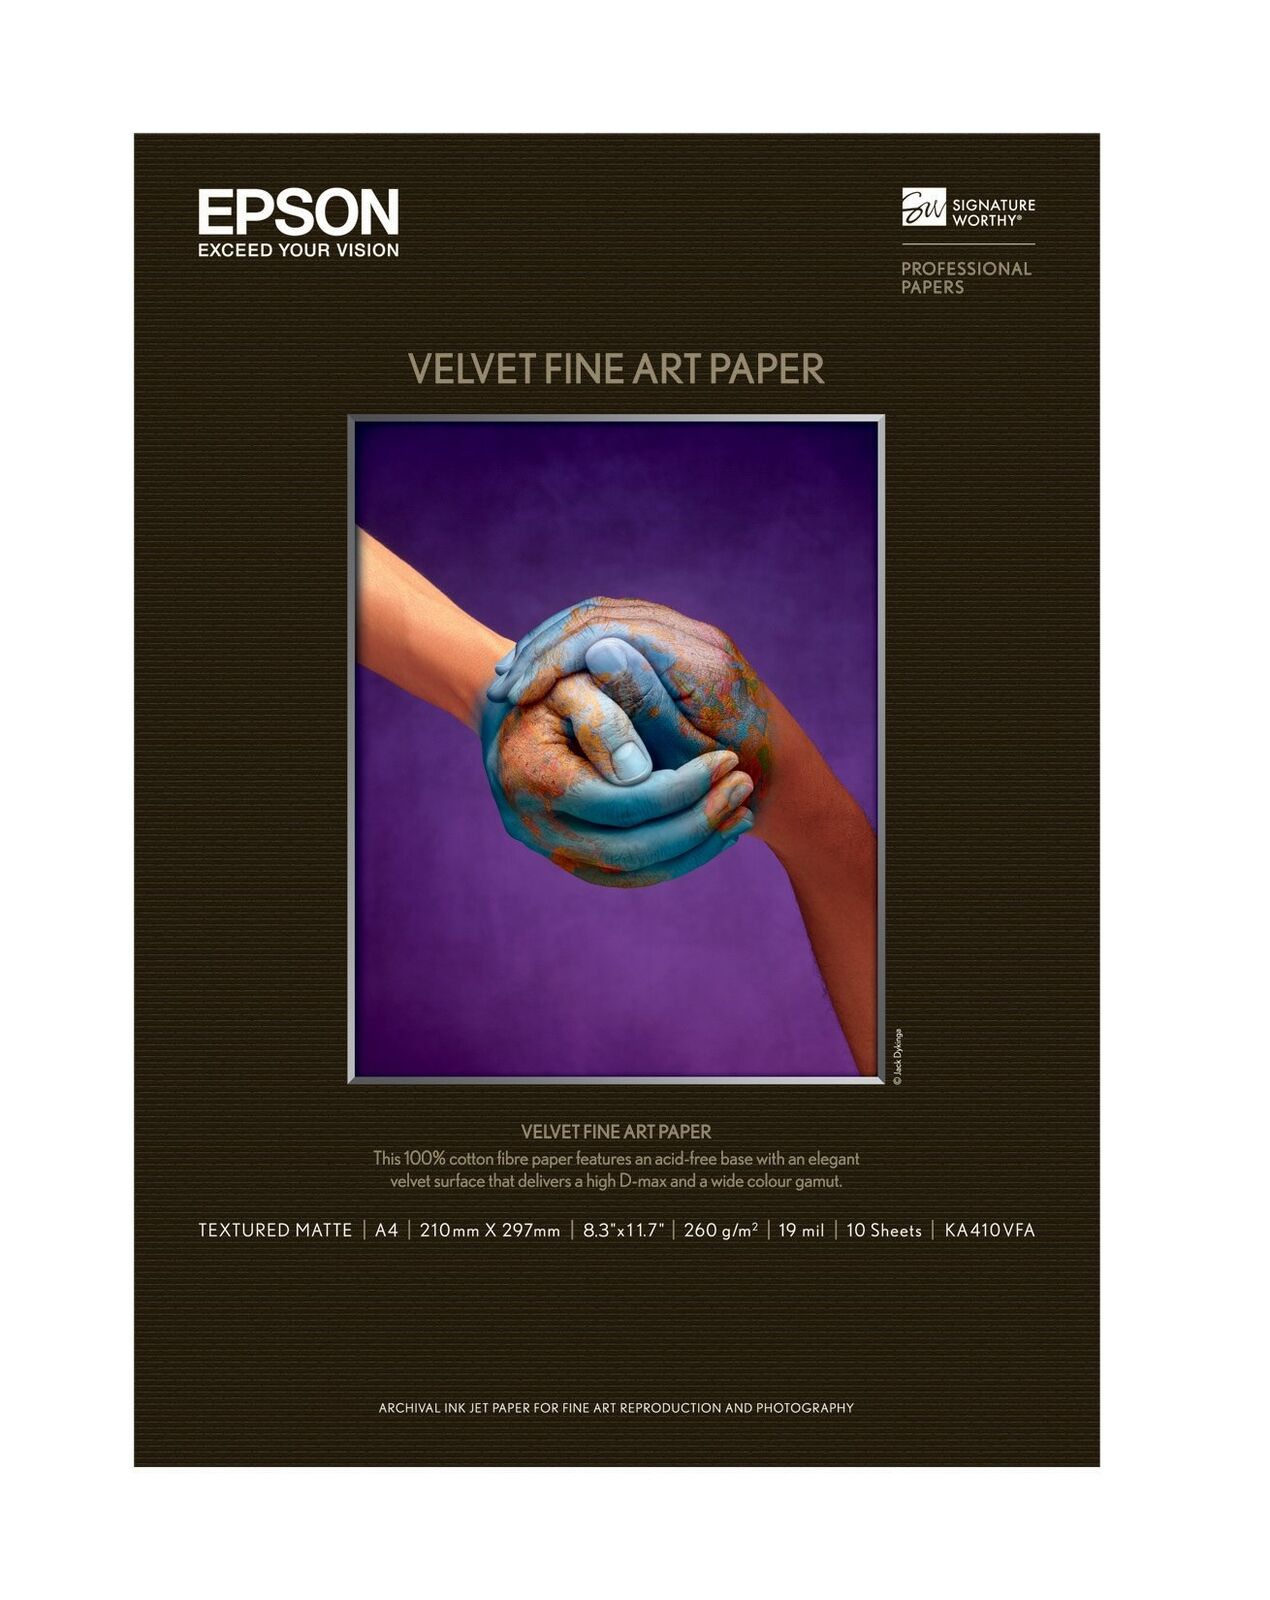 EPSON Velvet Fine Art Paper KA410VFA A4Size 10 pieces